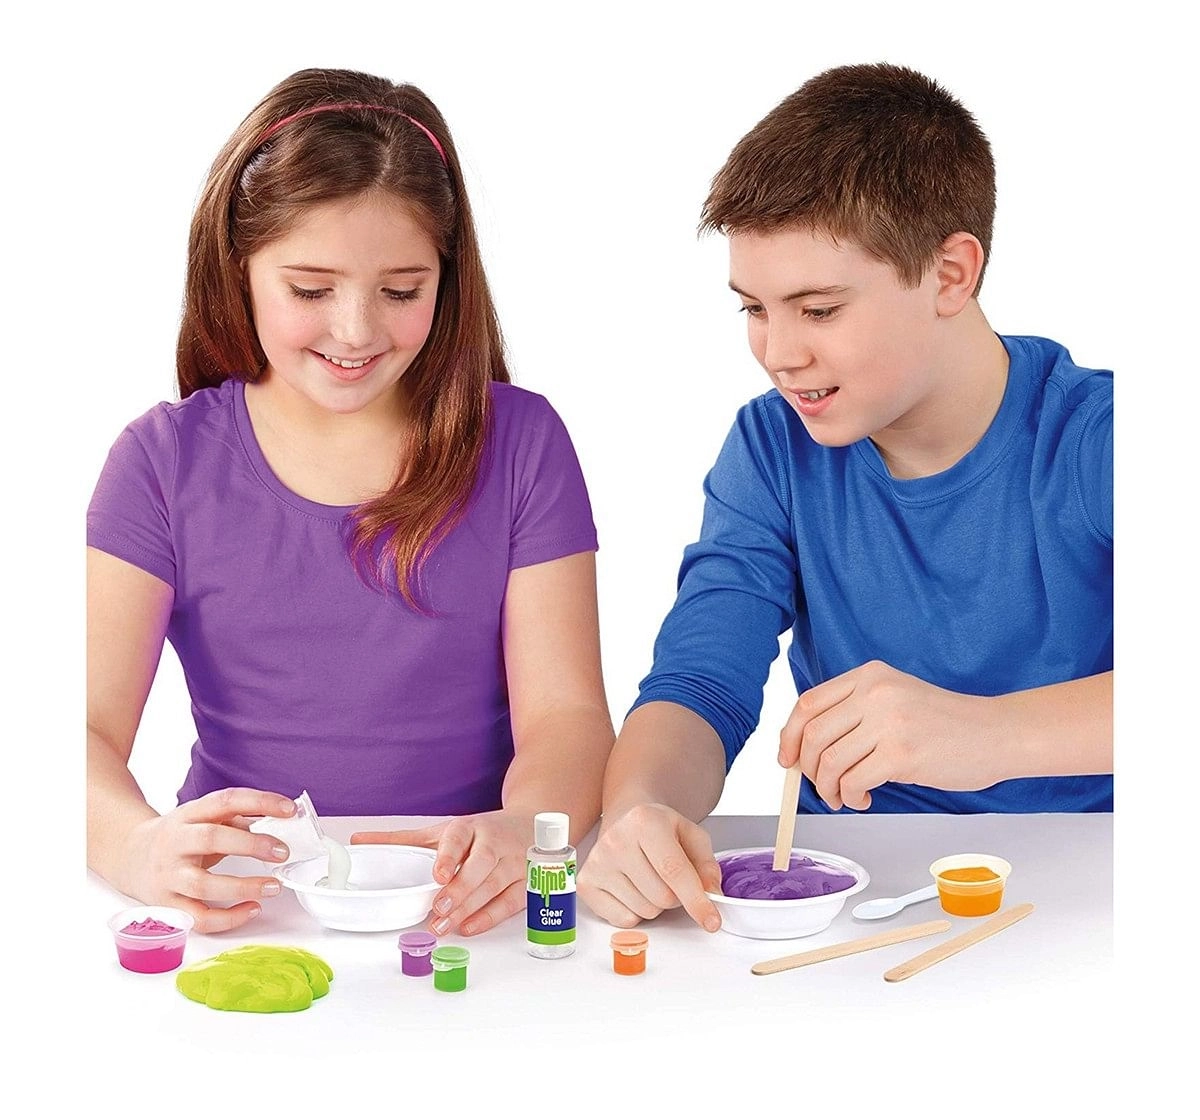 Cra-Z-Art Slime Color Change Slime Sand for Kids age 3Y+ 